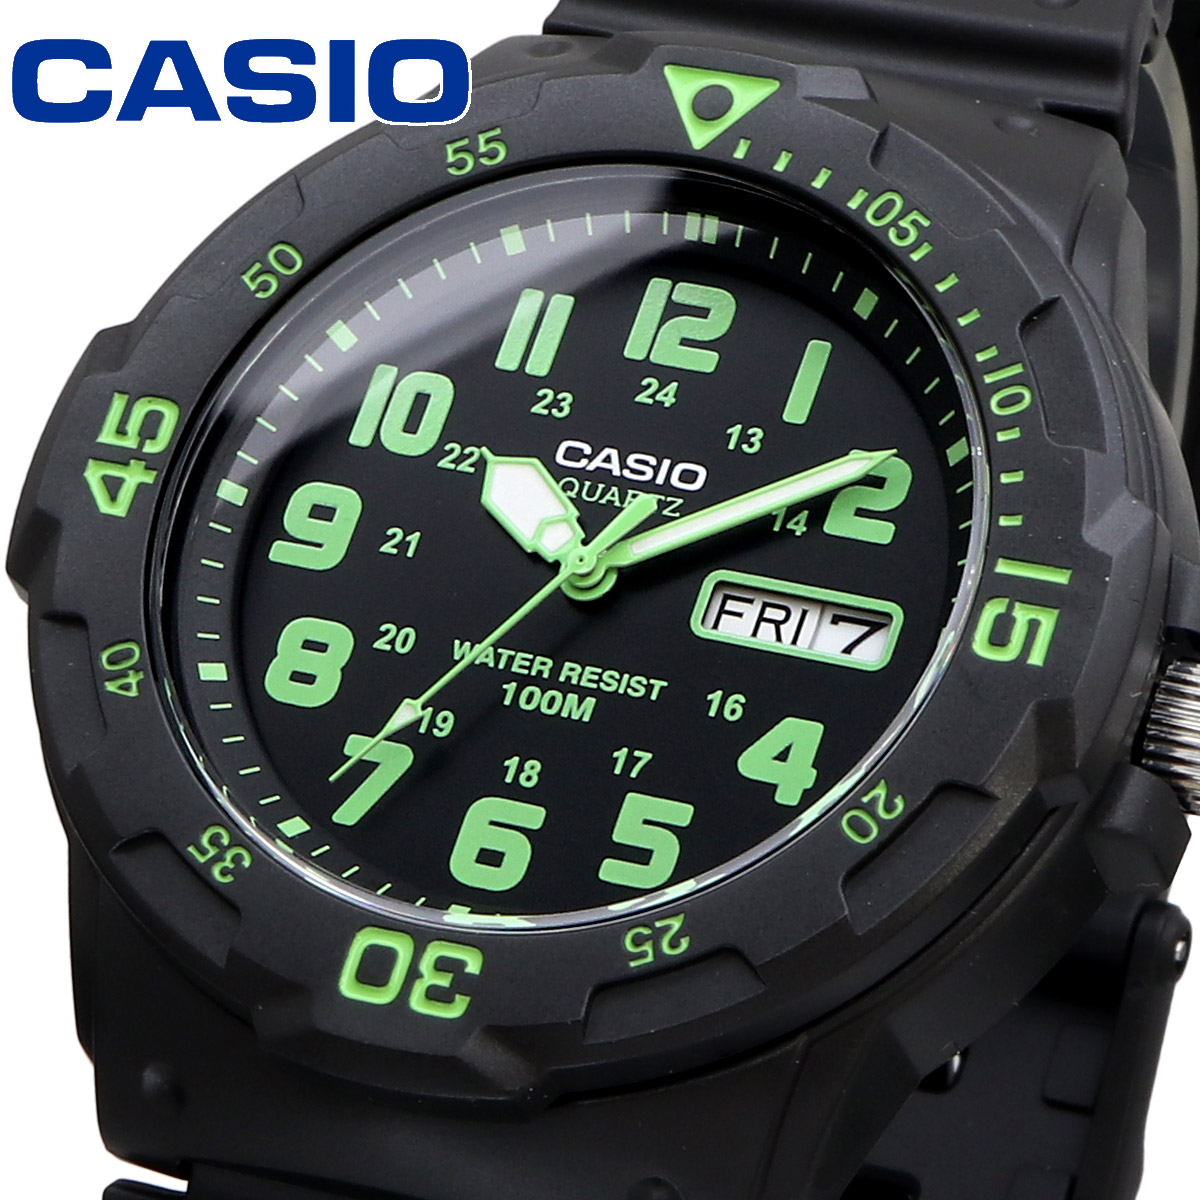 CASIO カシオ 腕時計 メンズ チープカシオ チプカシ 海外モデル アナログ MRW-200H-3BV